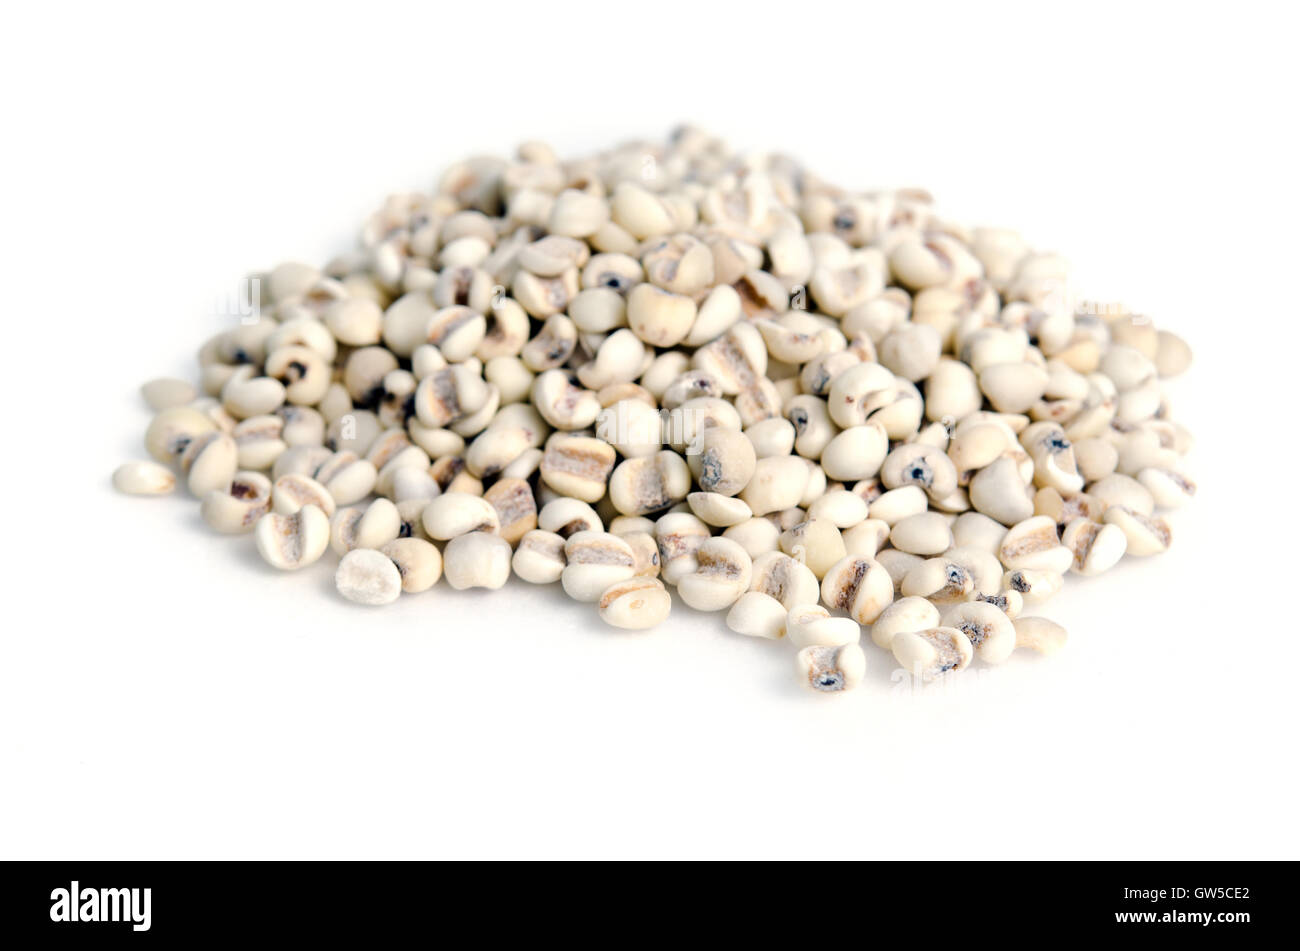 Le riz ou le millet Millet haricots grains (aussi appelé comme le millet dans l'Inde, de l'éleusine, le millet commun et le millet) Banque D'Images